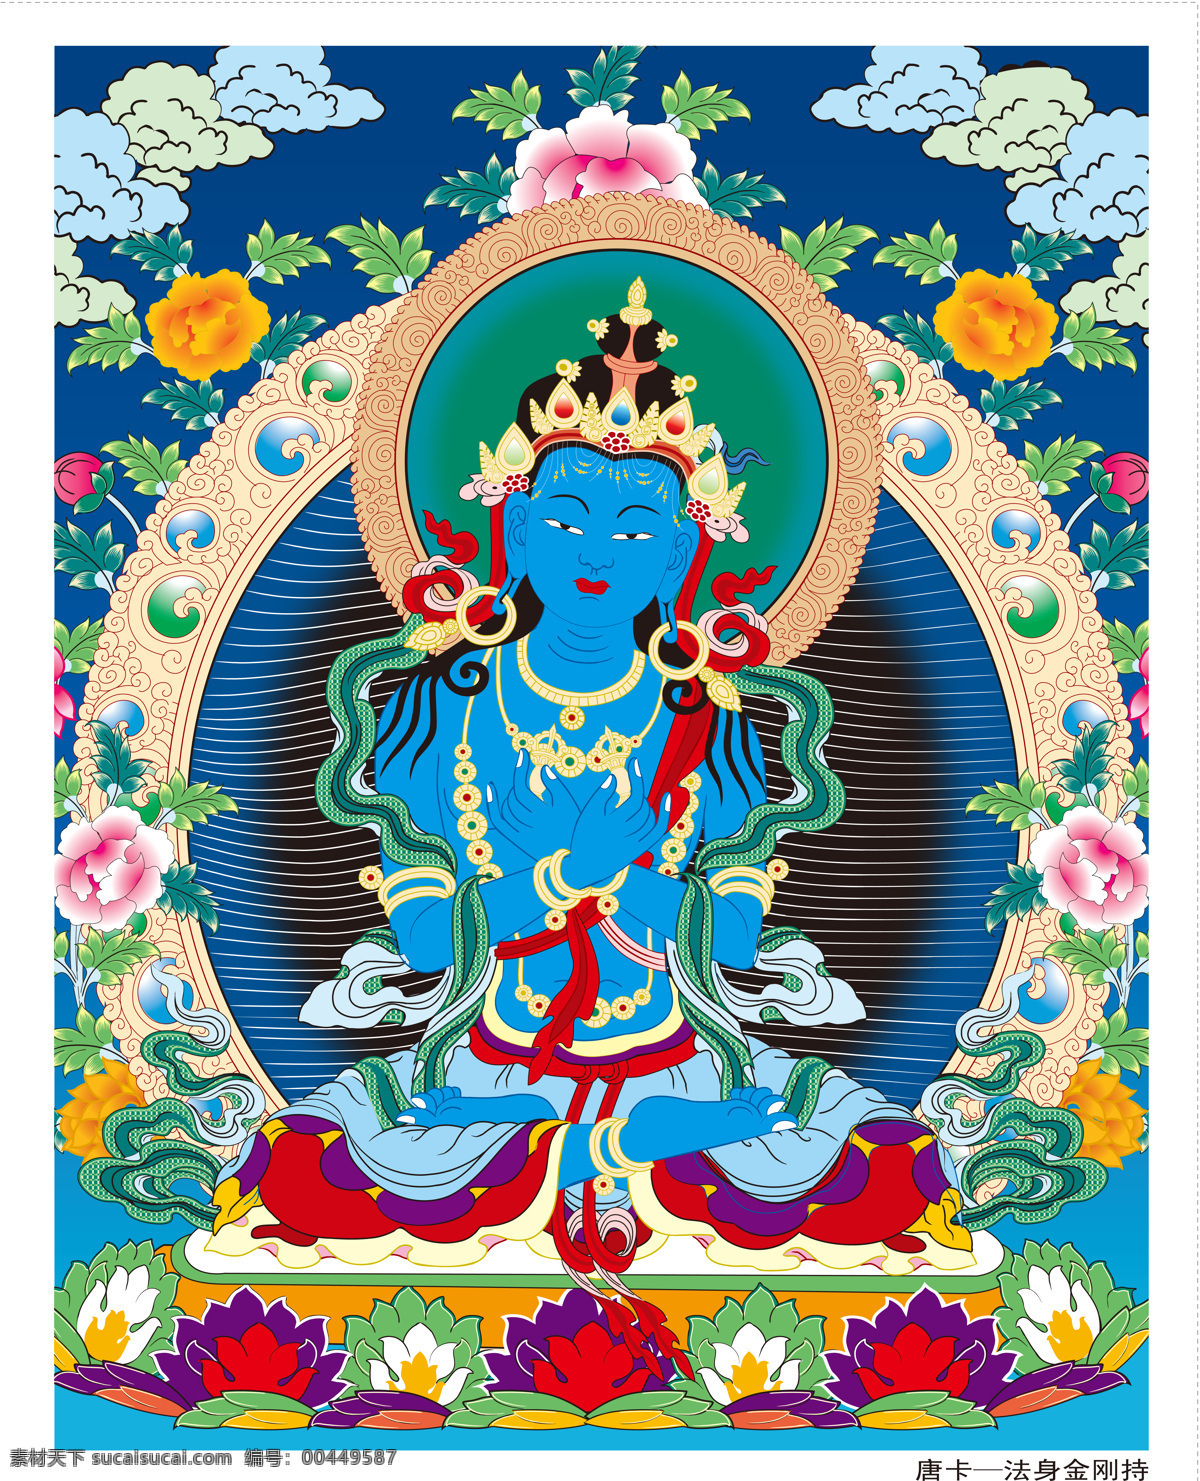 唐卡免费下载 藏传佛教 佛教 唐卡 文化艺术 西藏 宗教信仰 法身金刚持 法身 金刚持 密宗